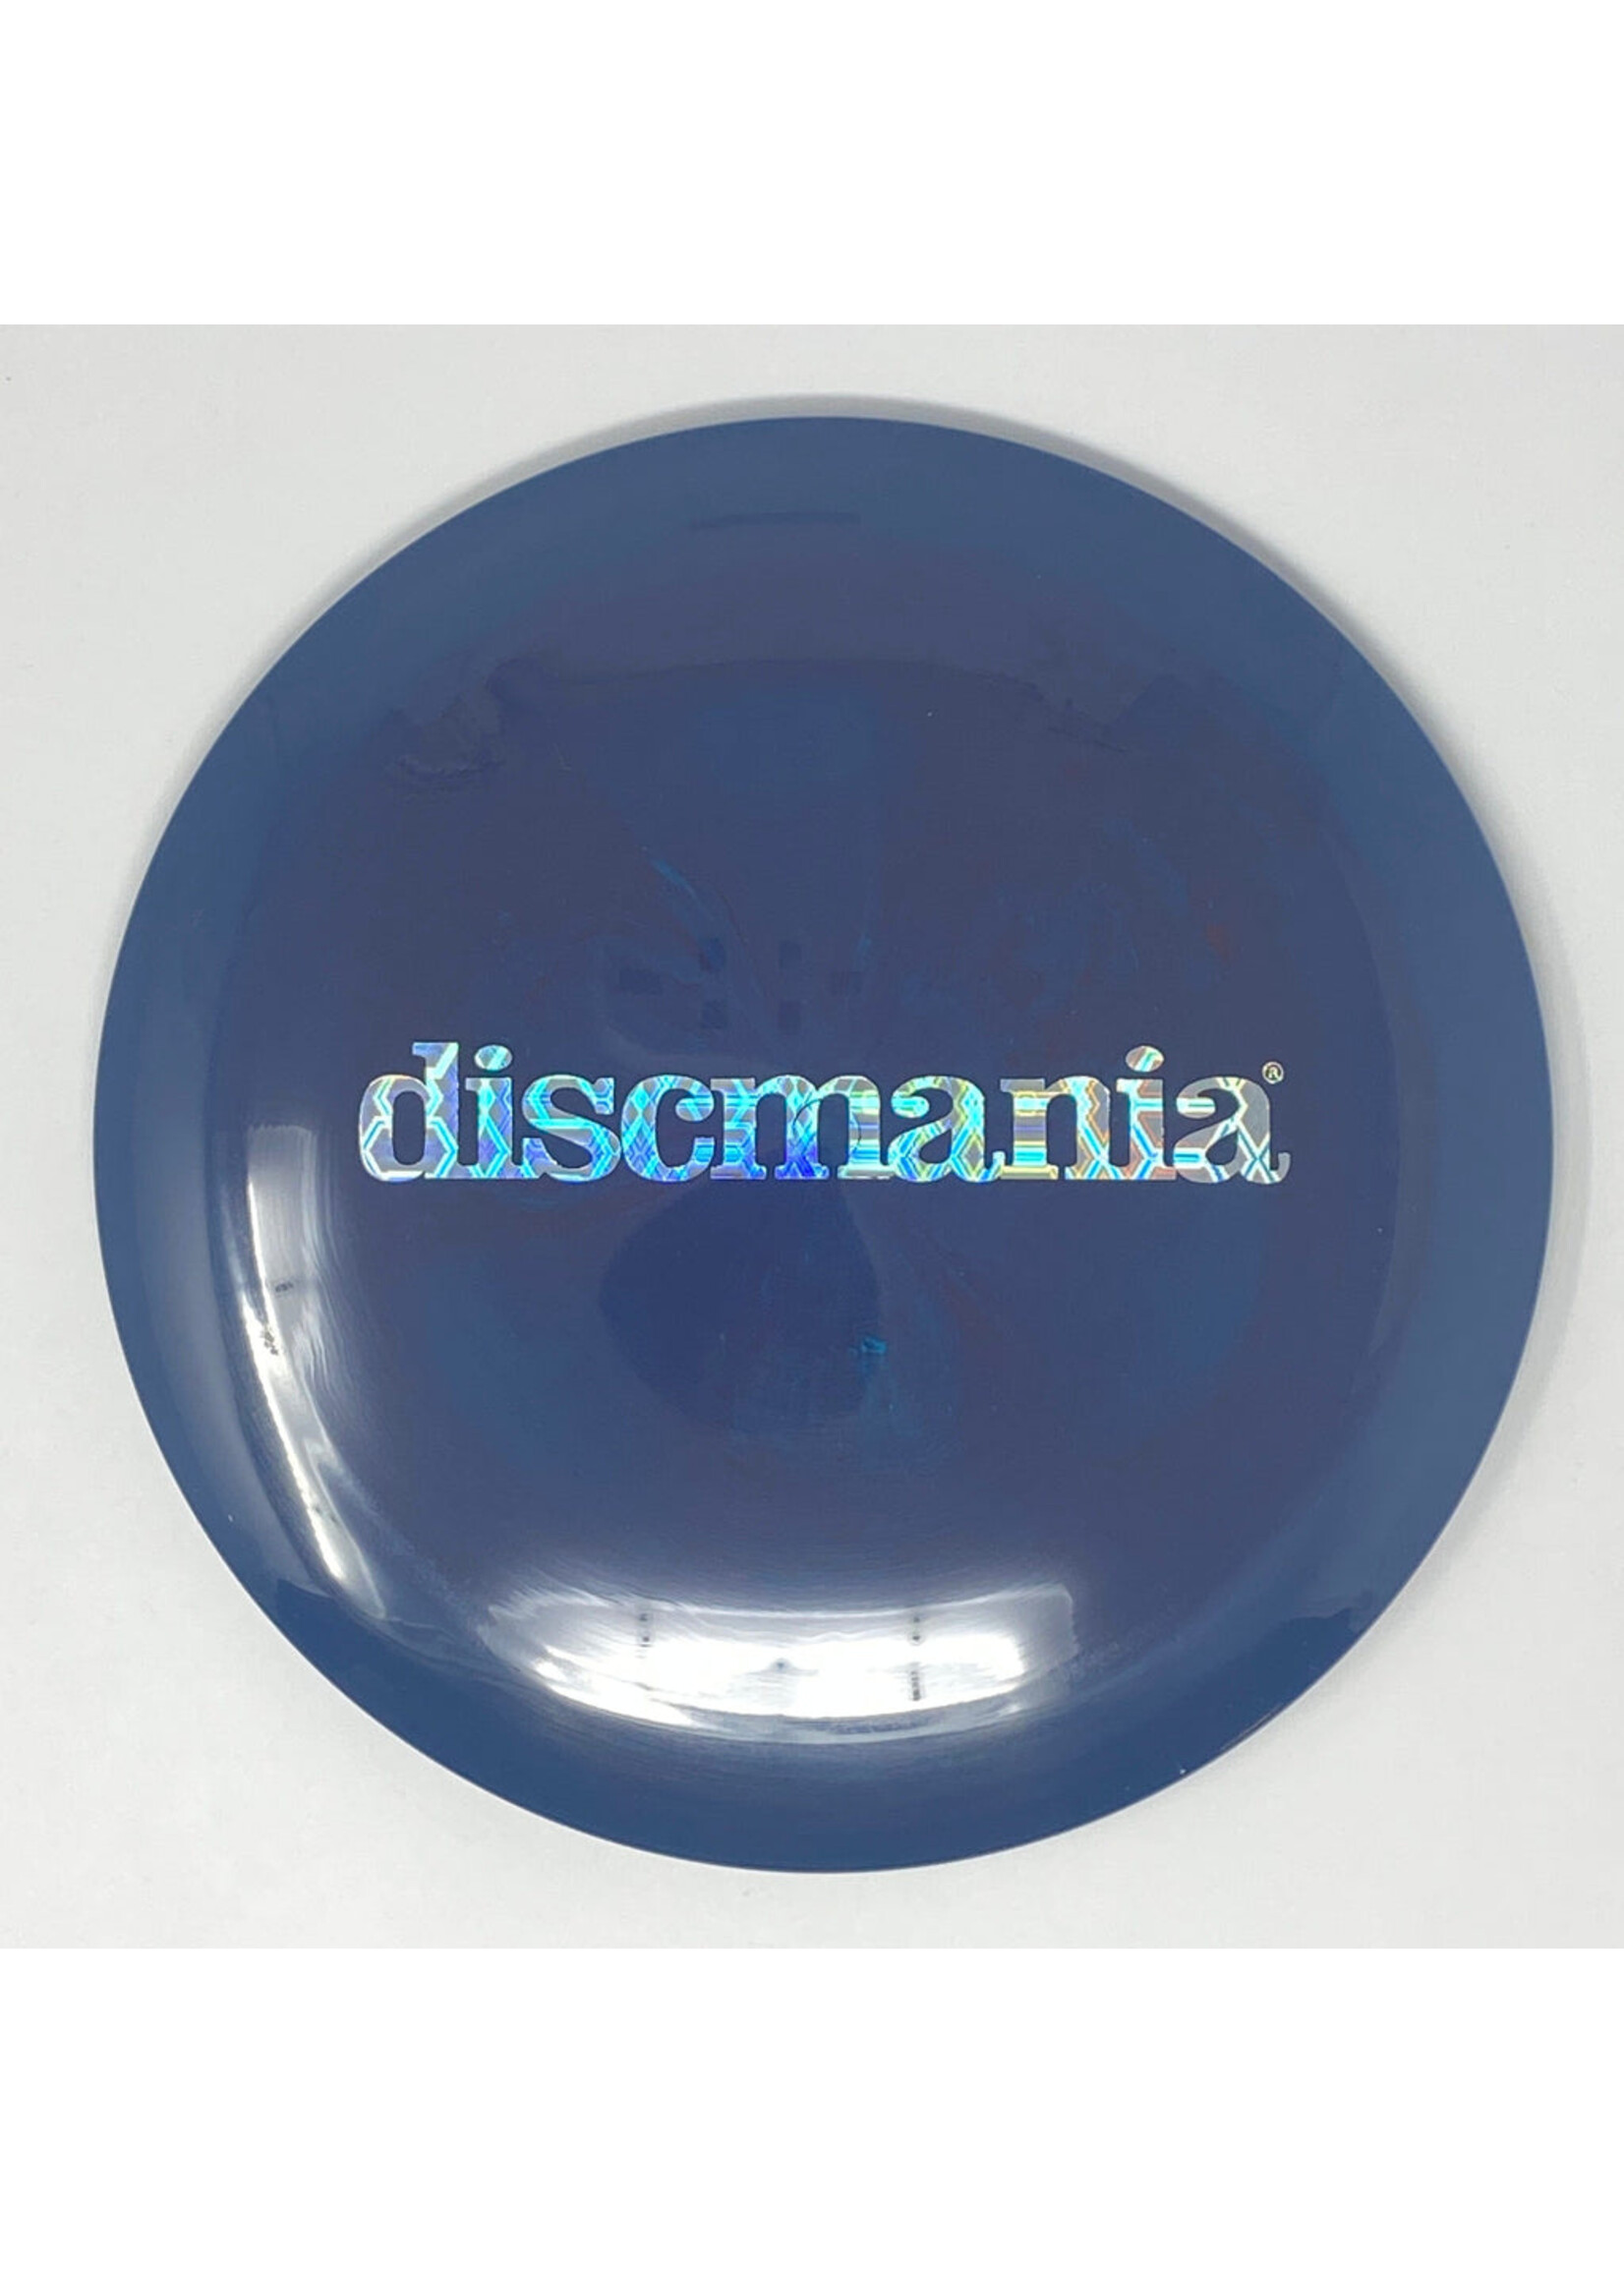 DiscMania Discmania Swirly S-line DD3 (Discmania Bar Stamp) - 165-169